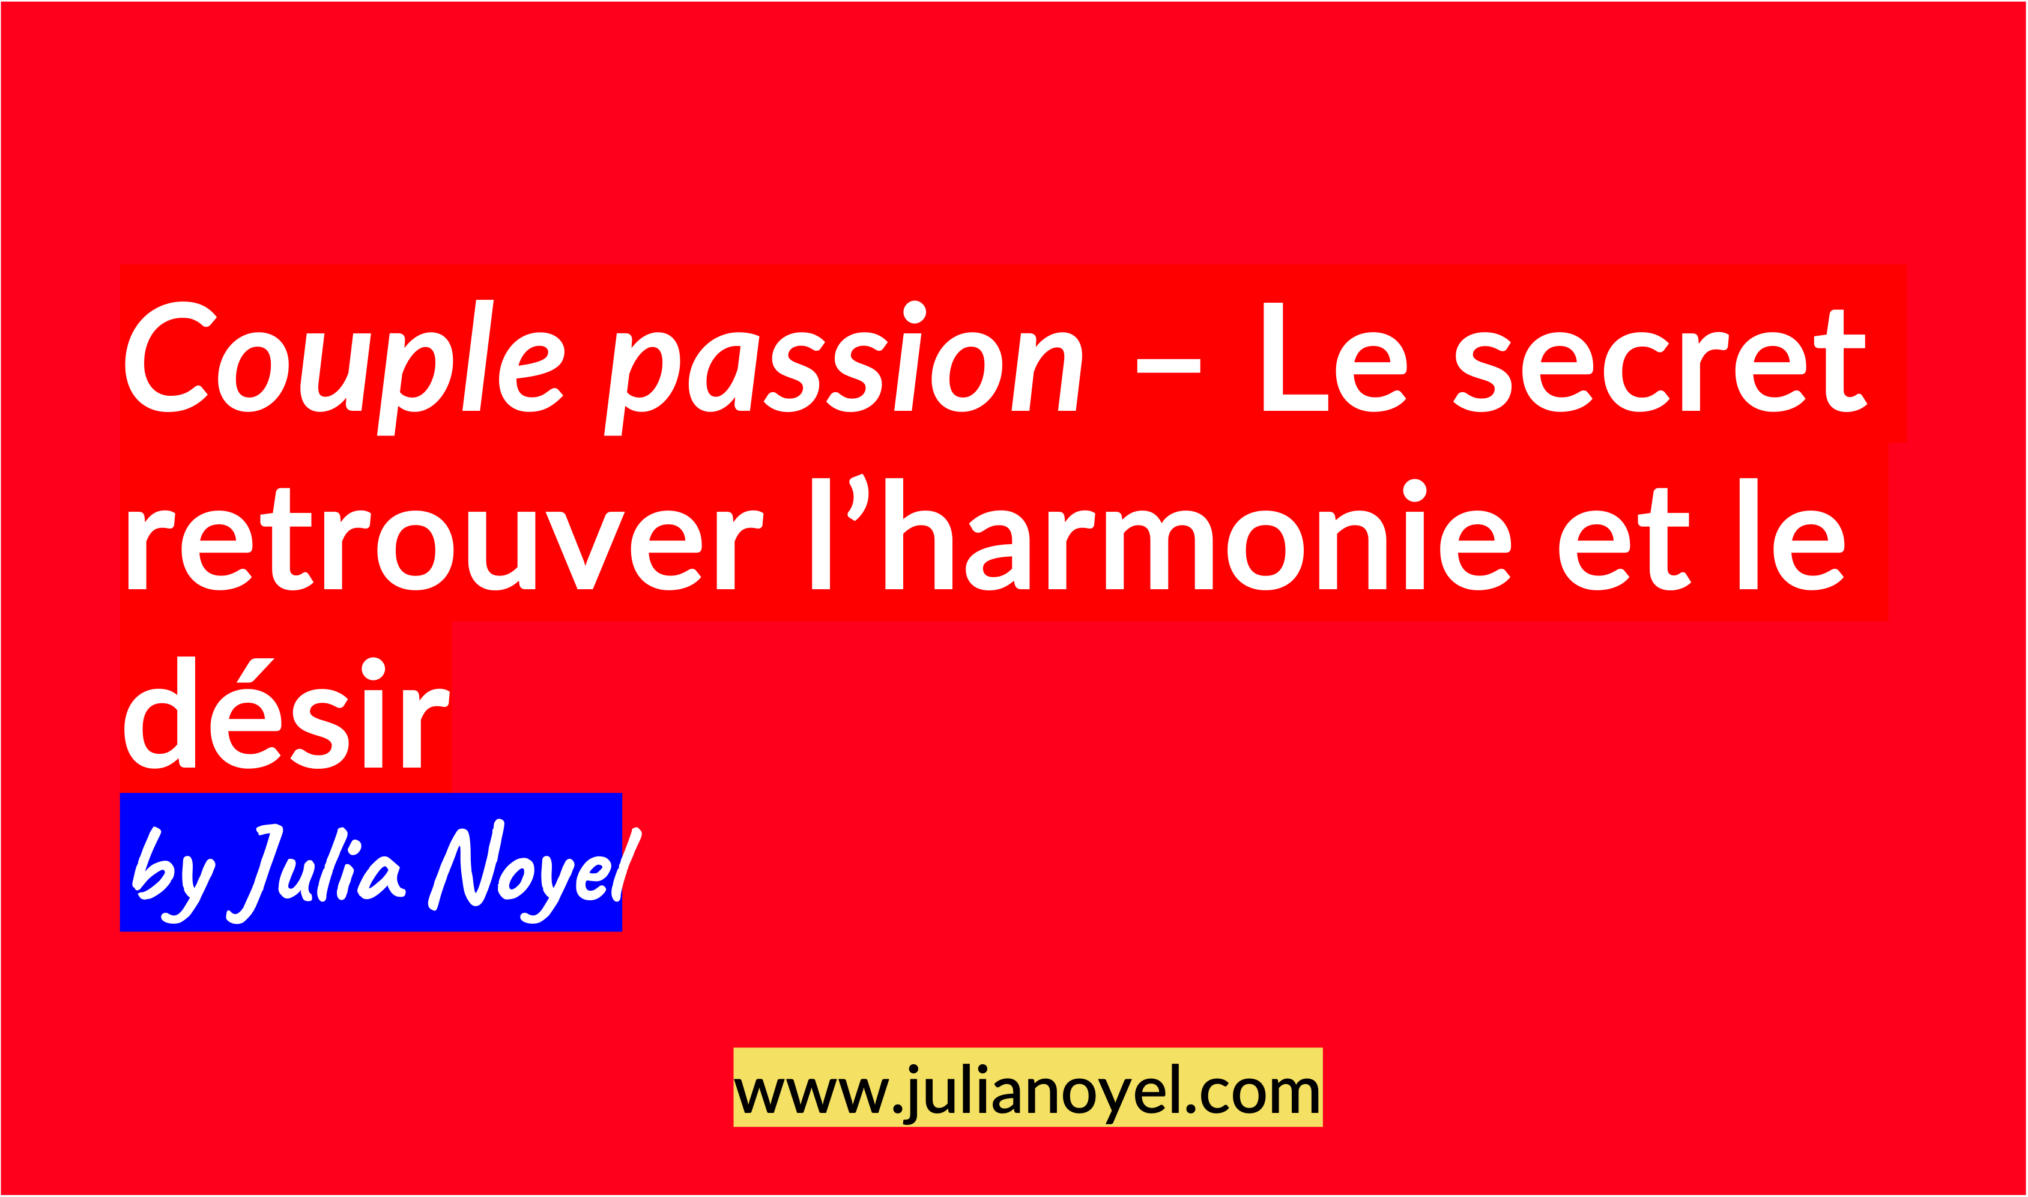 Couple passion – Le secret retrouver l’harmonie et le désir by Julia Noyel